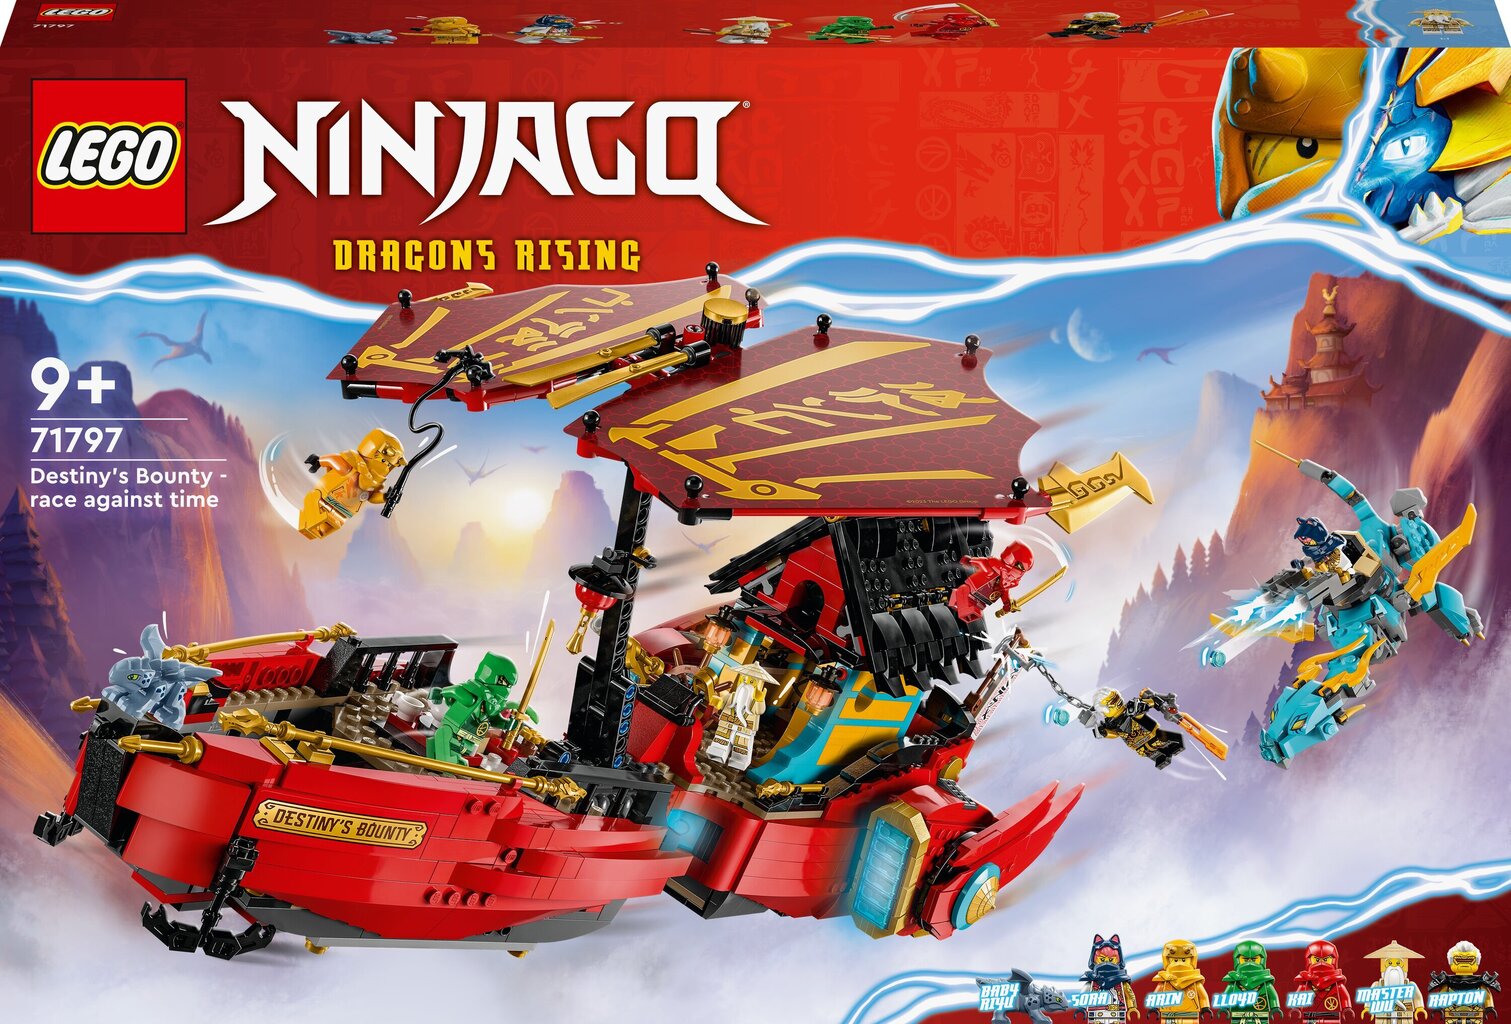 Lego ninja likteņa cena no 33€ līdz 199€ - KurPirkt.lv